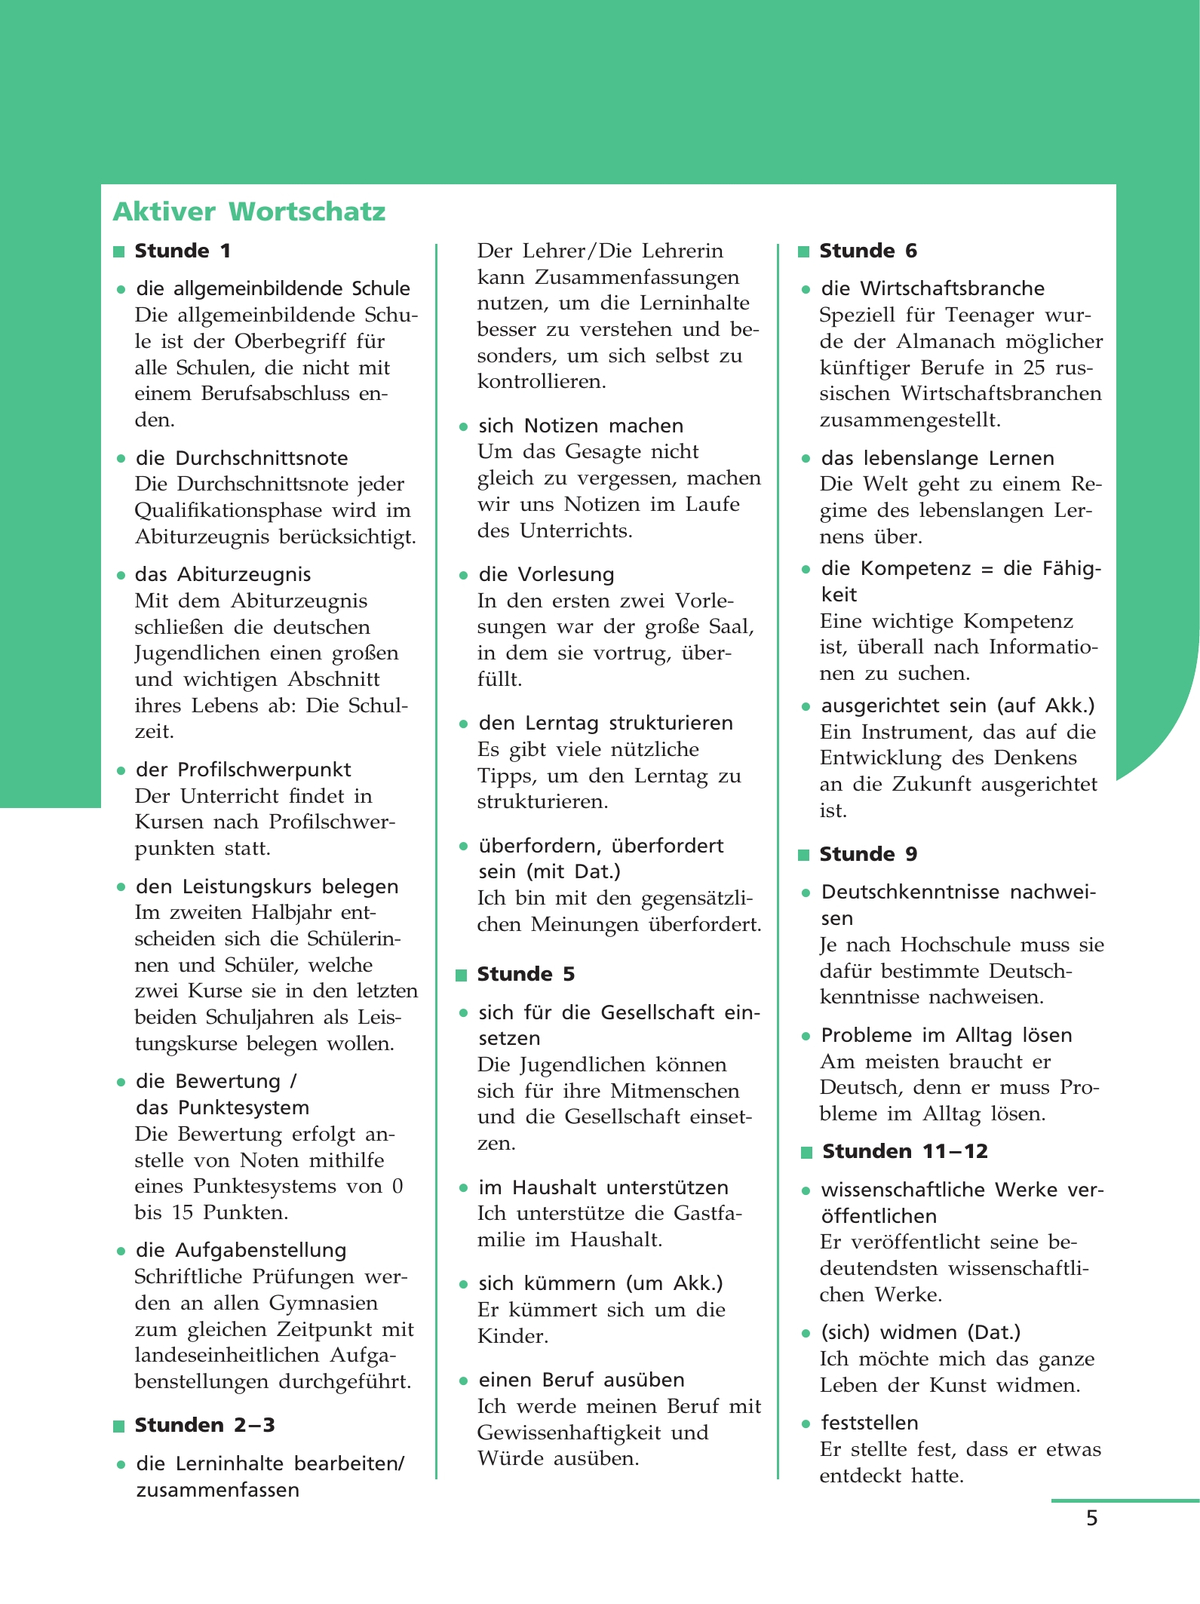 Немецкий язык. 11 класс. Учебник для общеобразовательных организаций. Базовый уровень 9